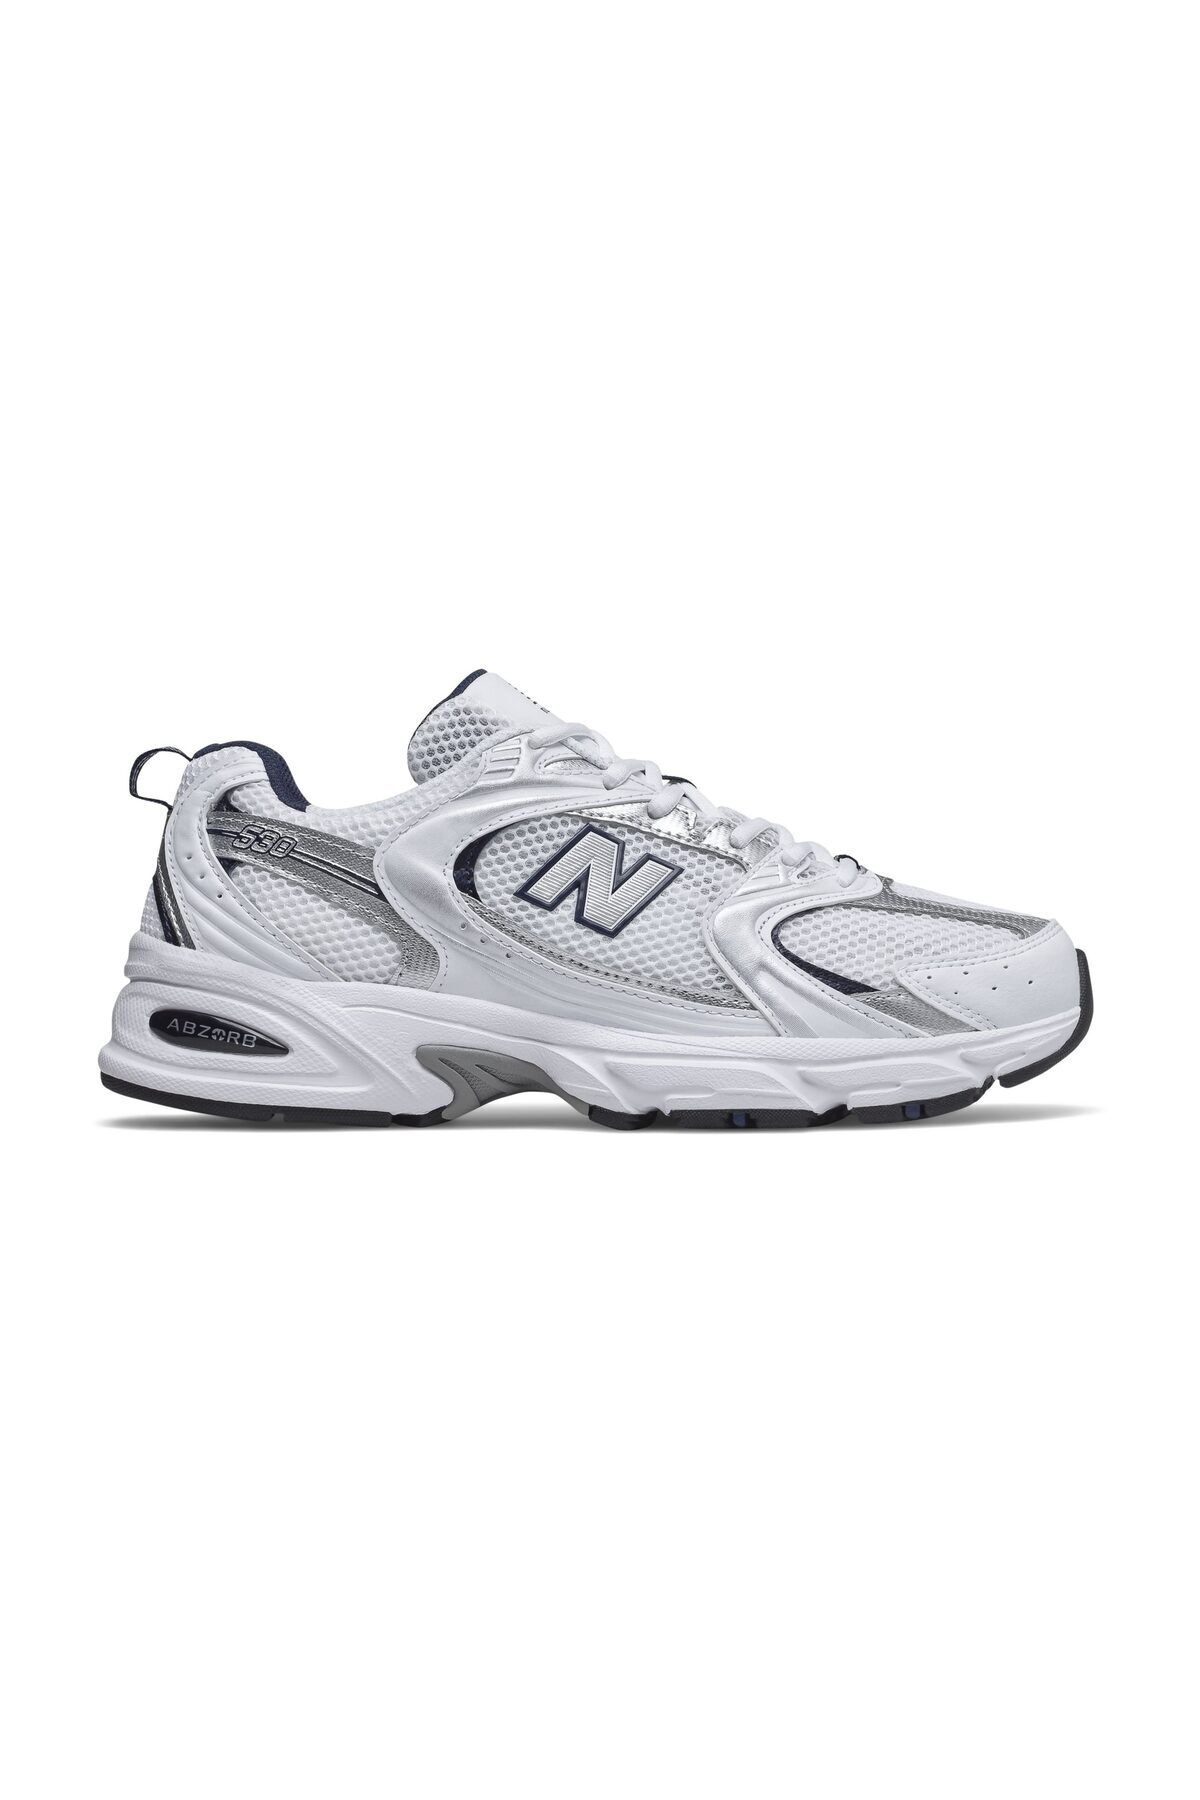 New Balance 530 Beyaz Unisex Günlük Ayakkabı - Mr530sg